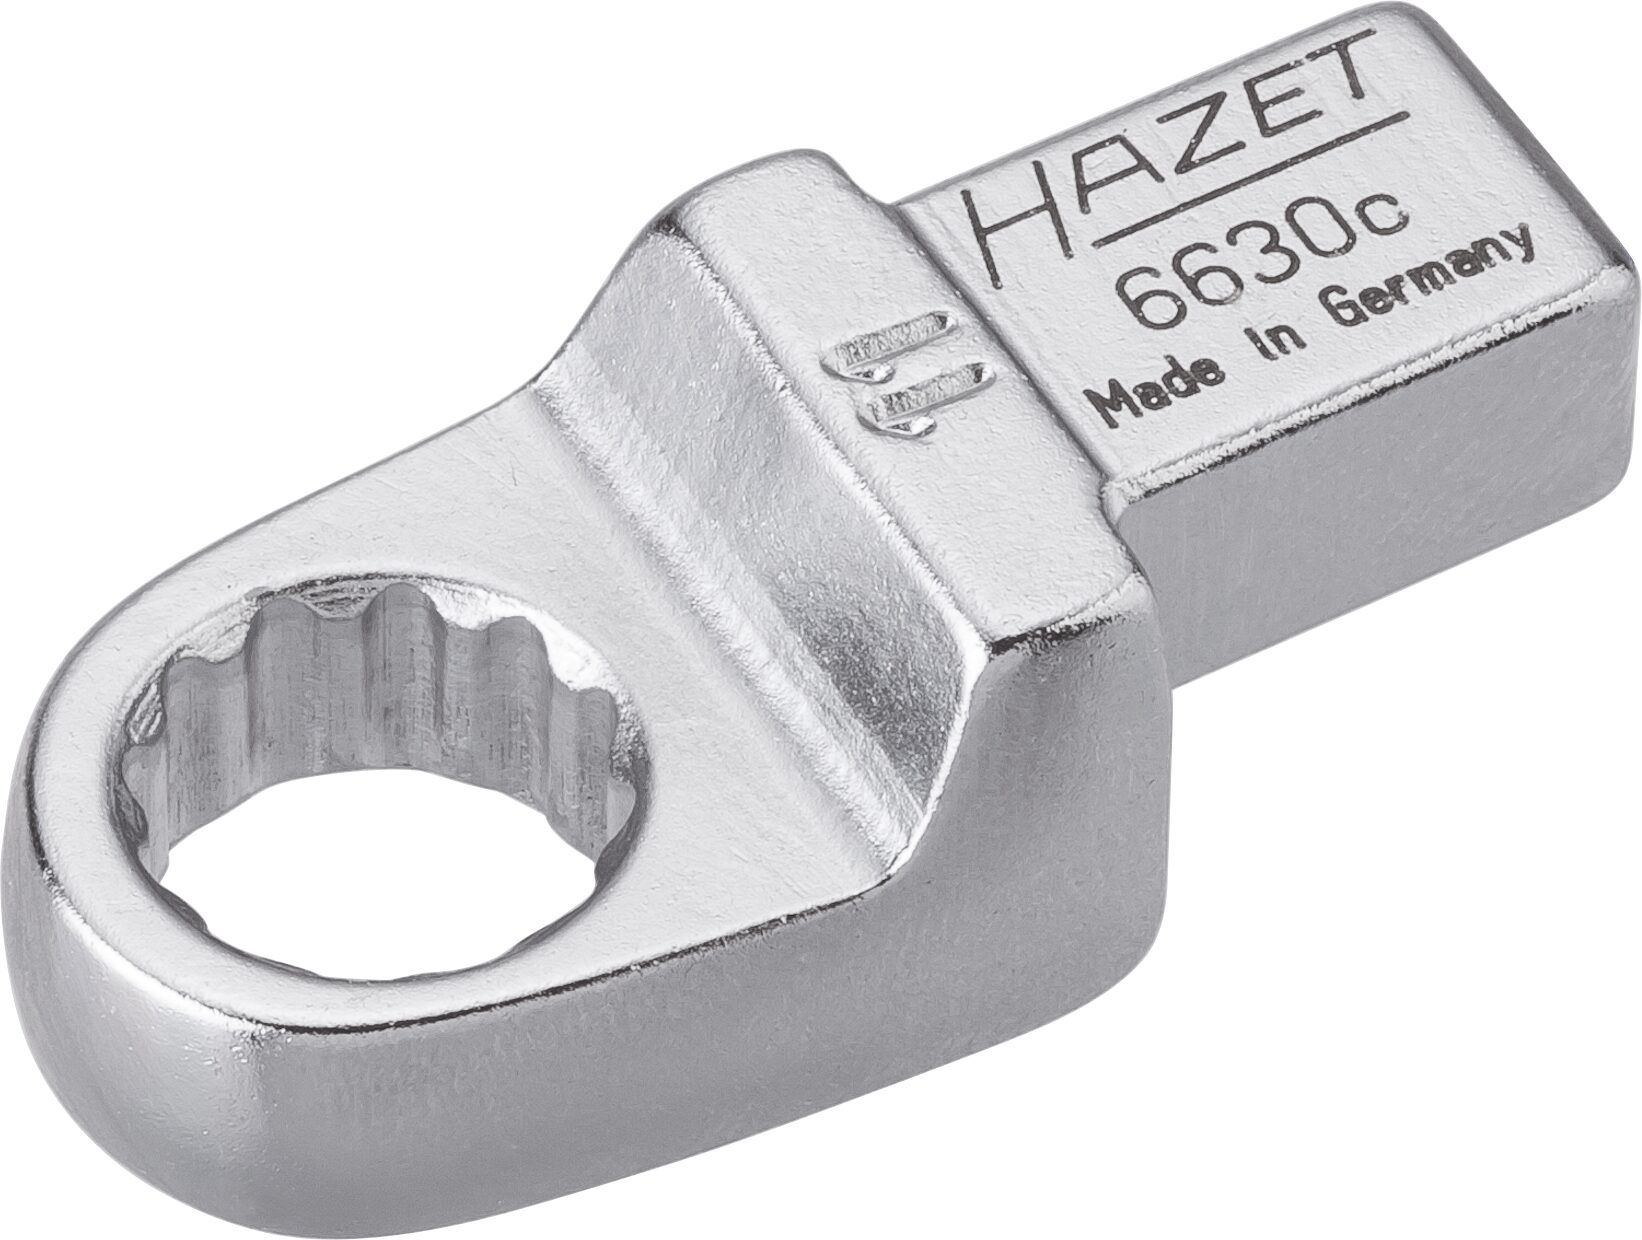 HAZET Einsteck-Ringschlüssel 6630C-11 · Einsteck-Vierkant 9 x 12 mm · Außen Doppel-Sechskant-Tractionsprofil · 11 mm